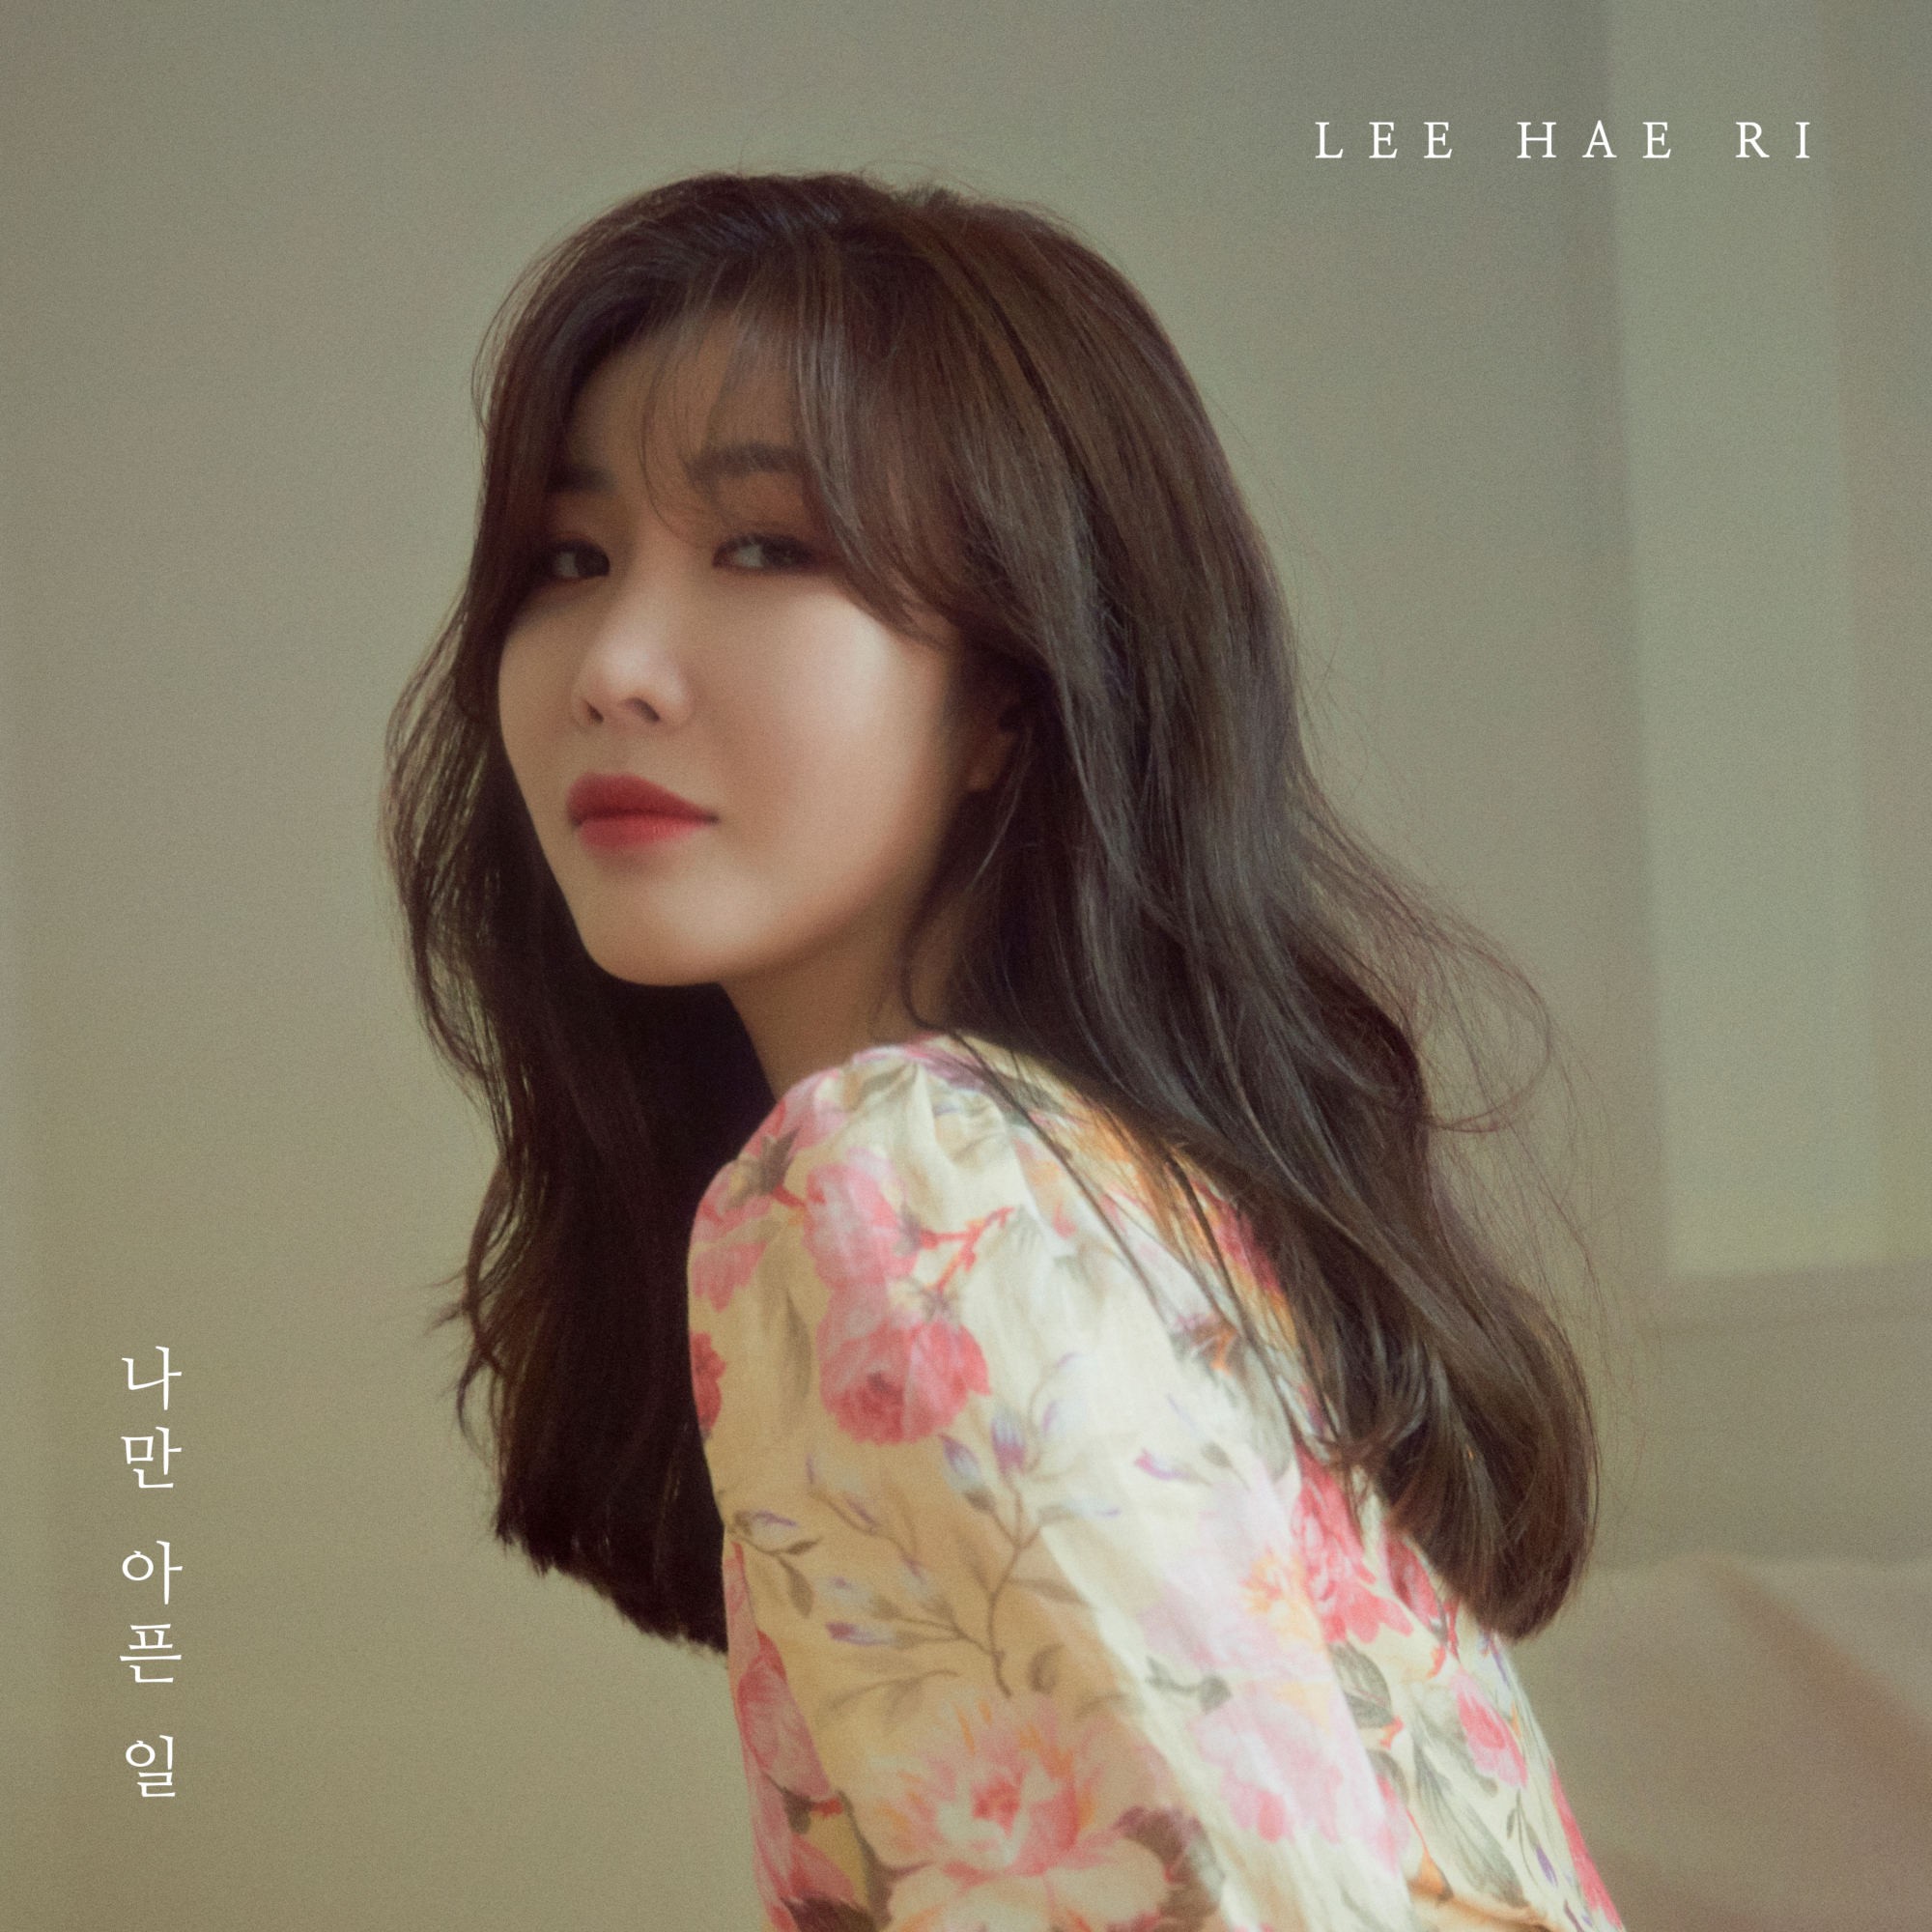 Lee Hae Ri (이해리) – Heartache (나만 아픈 일) [FLAC + MP3 320 / WEB] [2019.09.23]